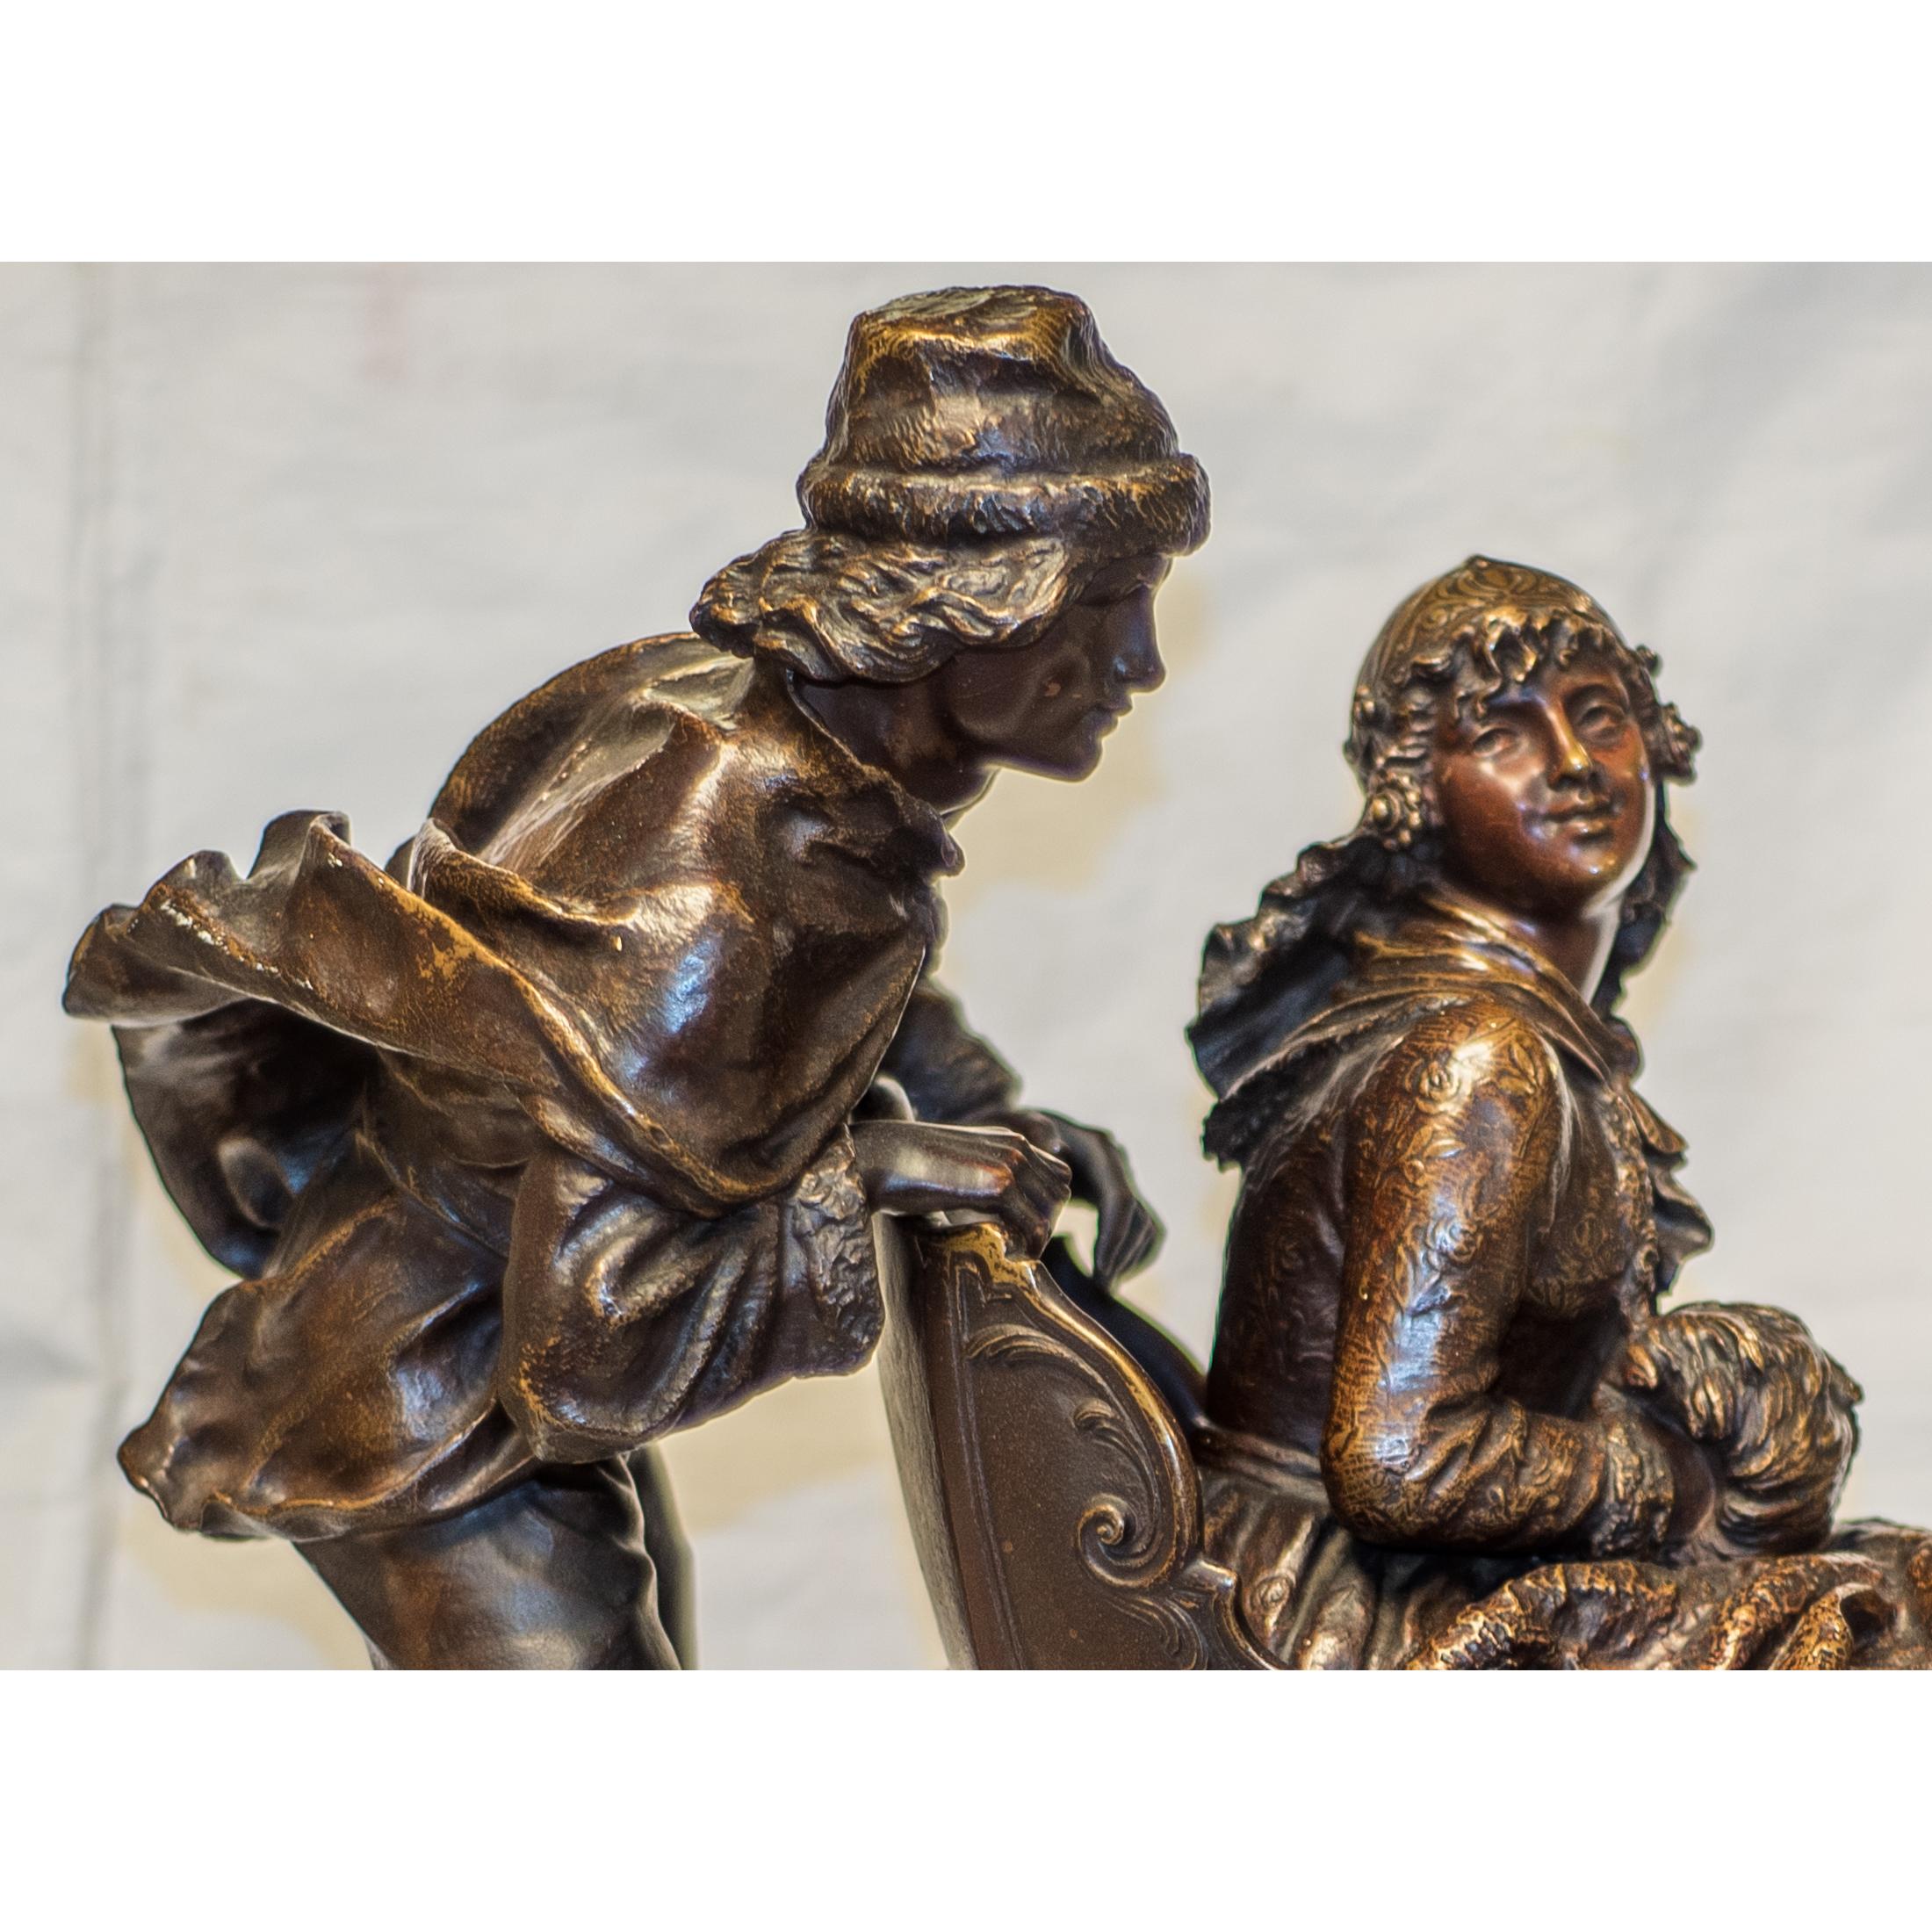 Une belle sculpture en bronze patiné représentant un homme poussant le traîneau de la femme par Charles Ferville-Suan.
Scène d'hiver représentant un homme en patins, poussant le traîneau de la femme montée, sur socle en onyx et bois ; signé en